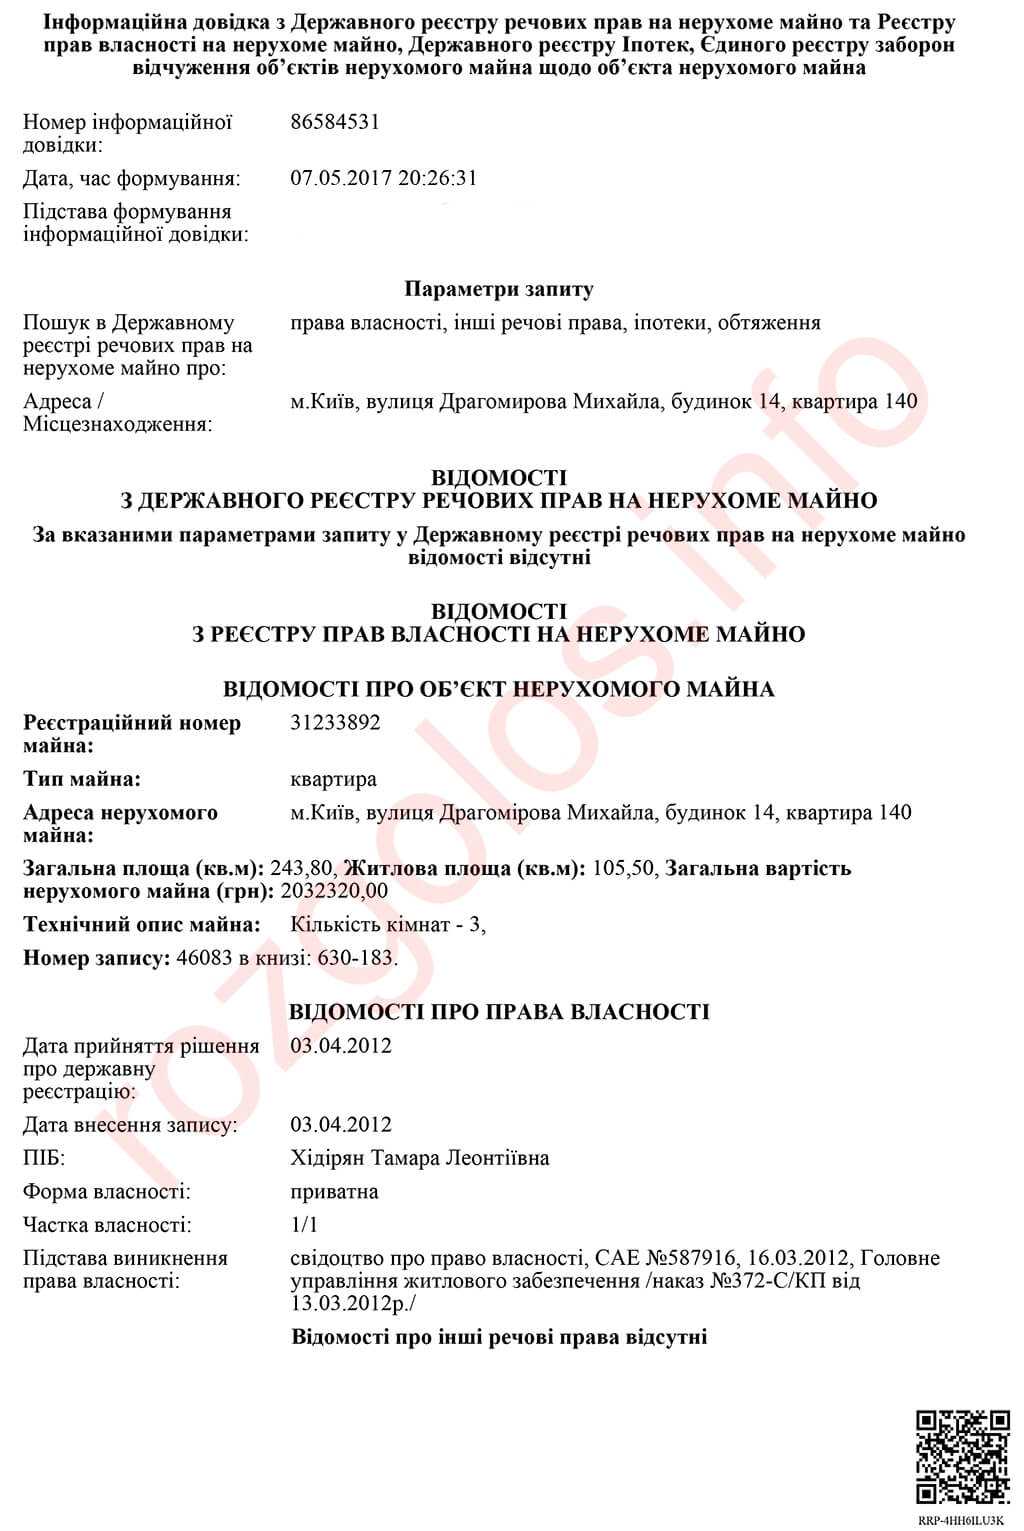 Почему конвертатор Мисак Хидирян, тесно связанный с РФ, спокойно ведет бизнес в Украине и не боится санкций СНБО?